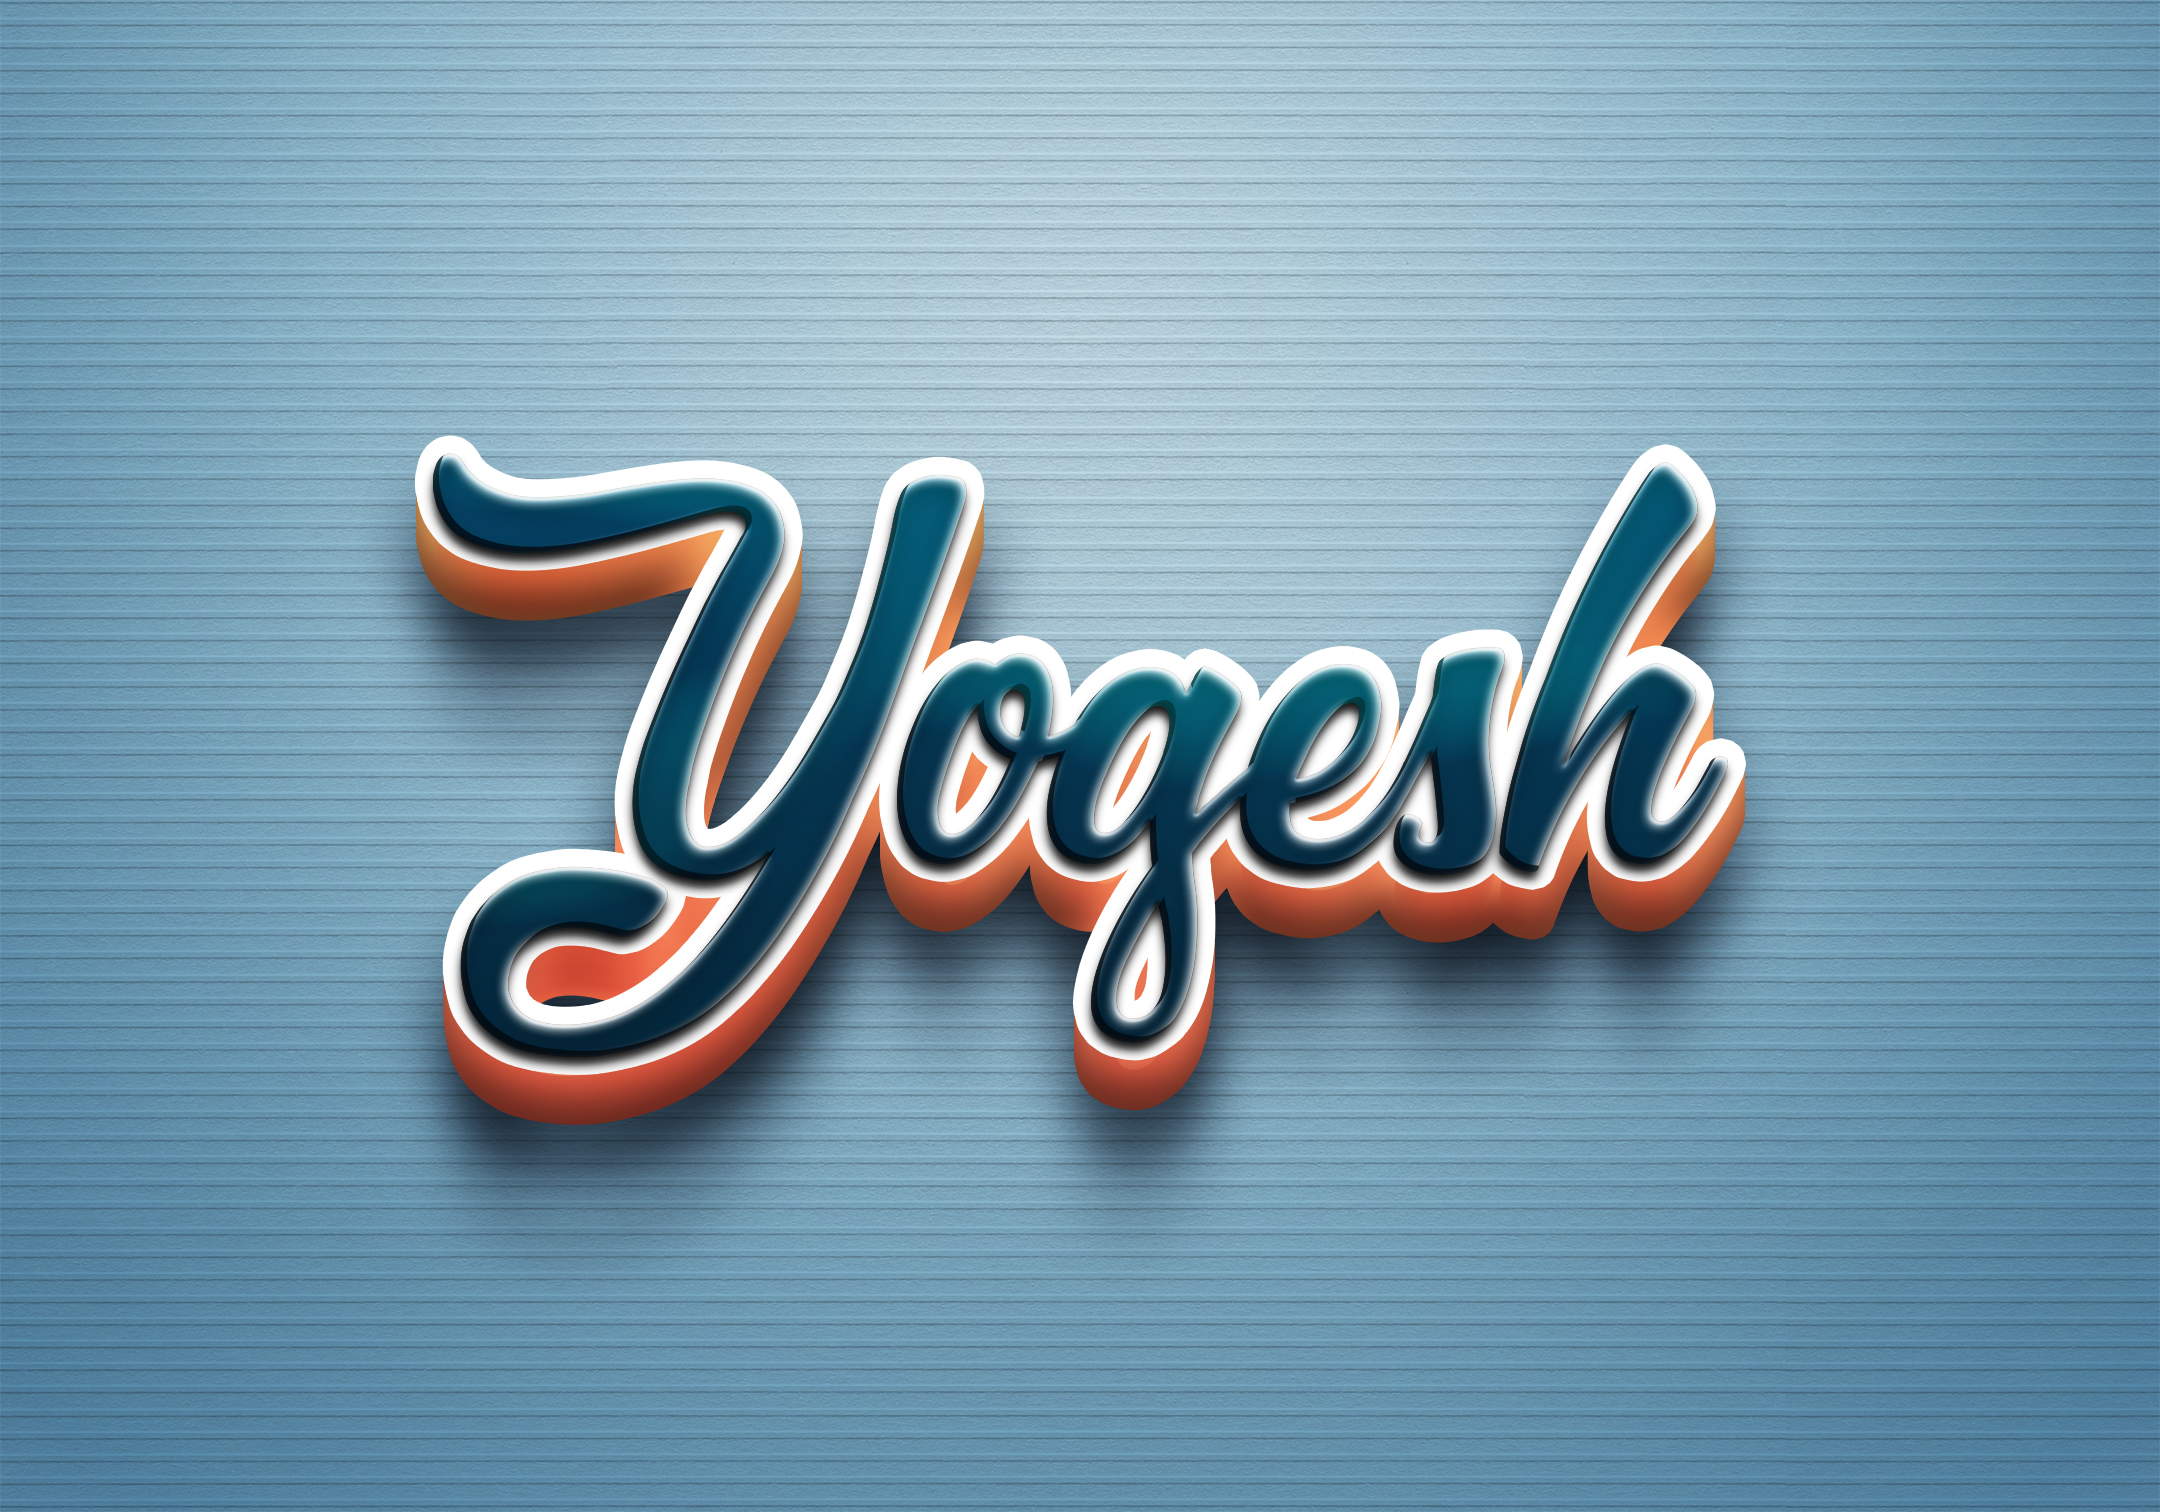 Name art video yogesh - YouTube